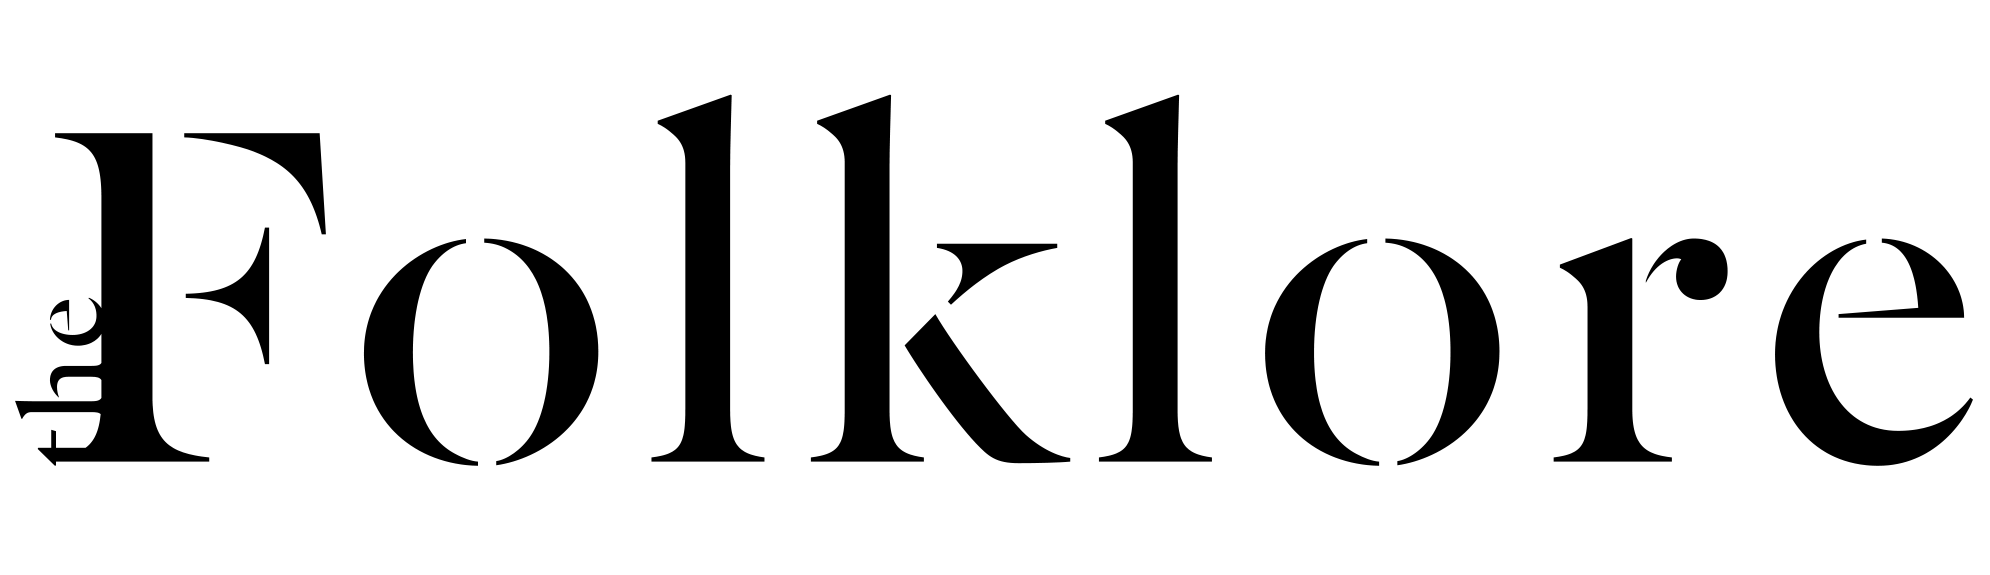 TheFolklore_Black_Horz_Logo.png